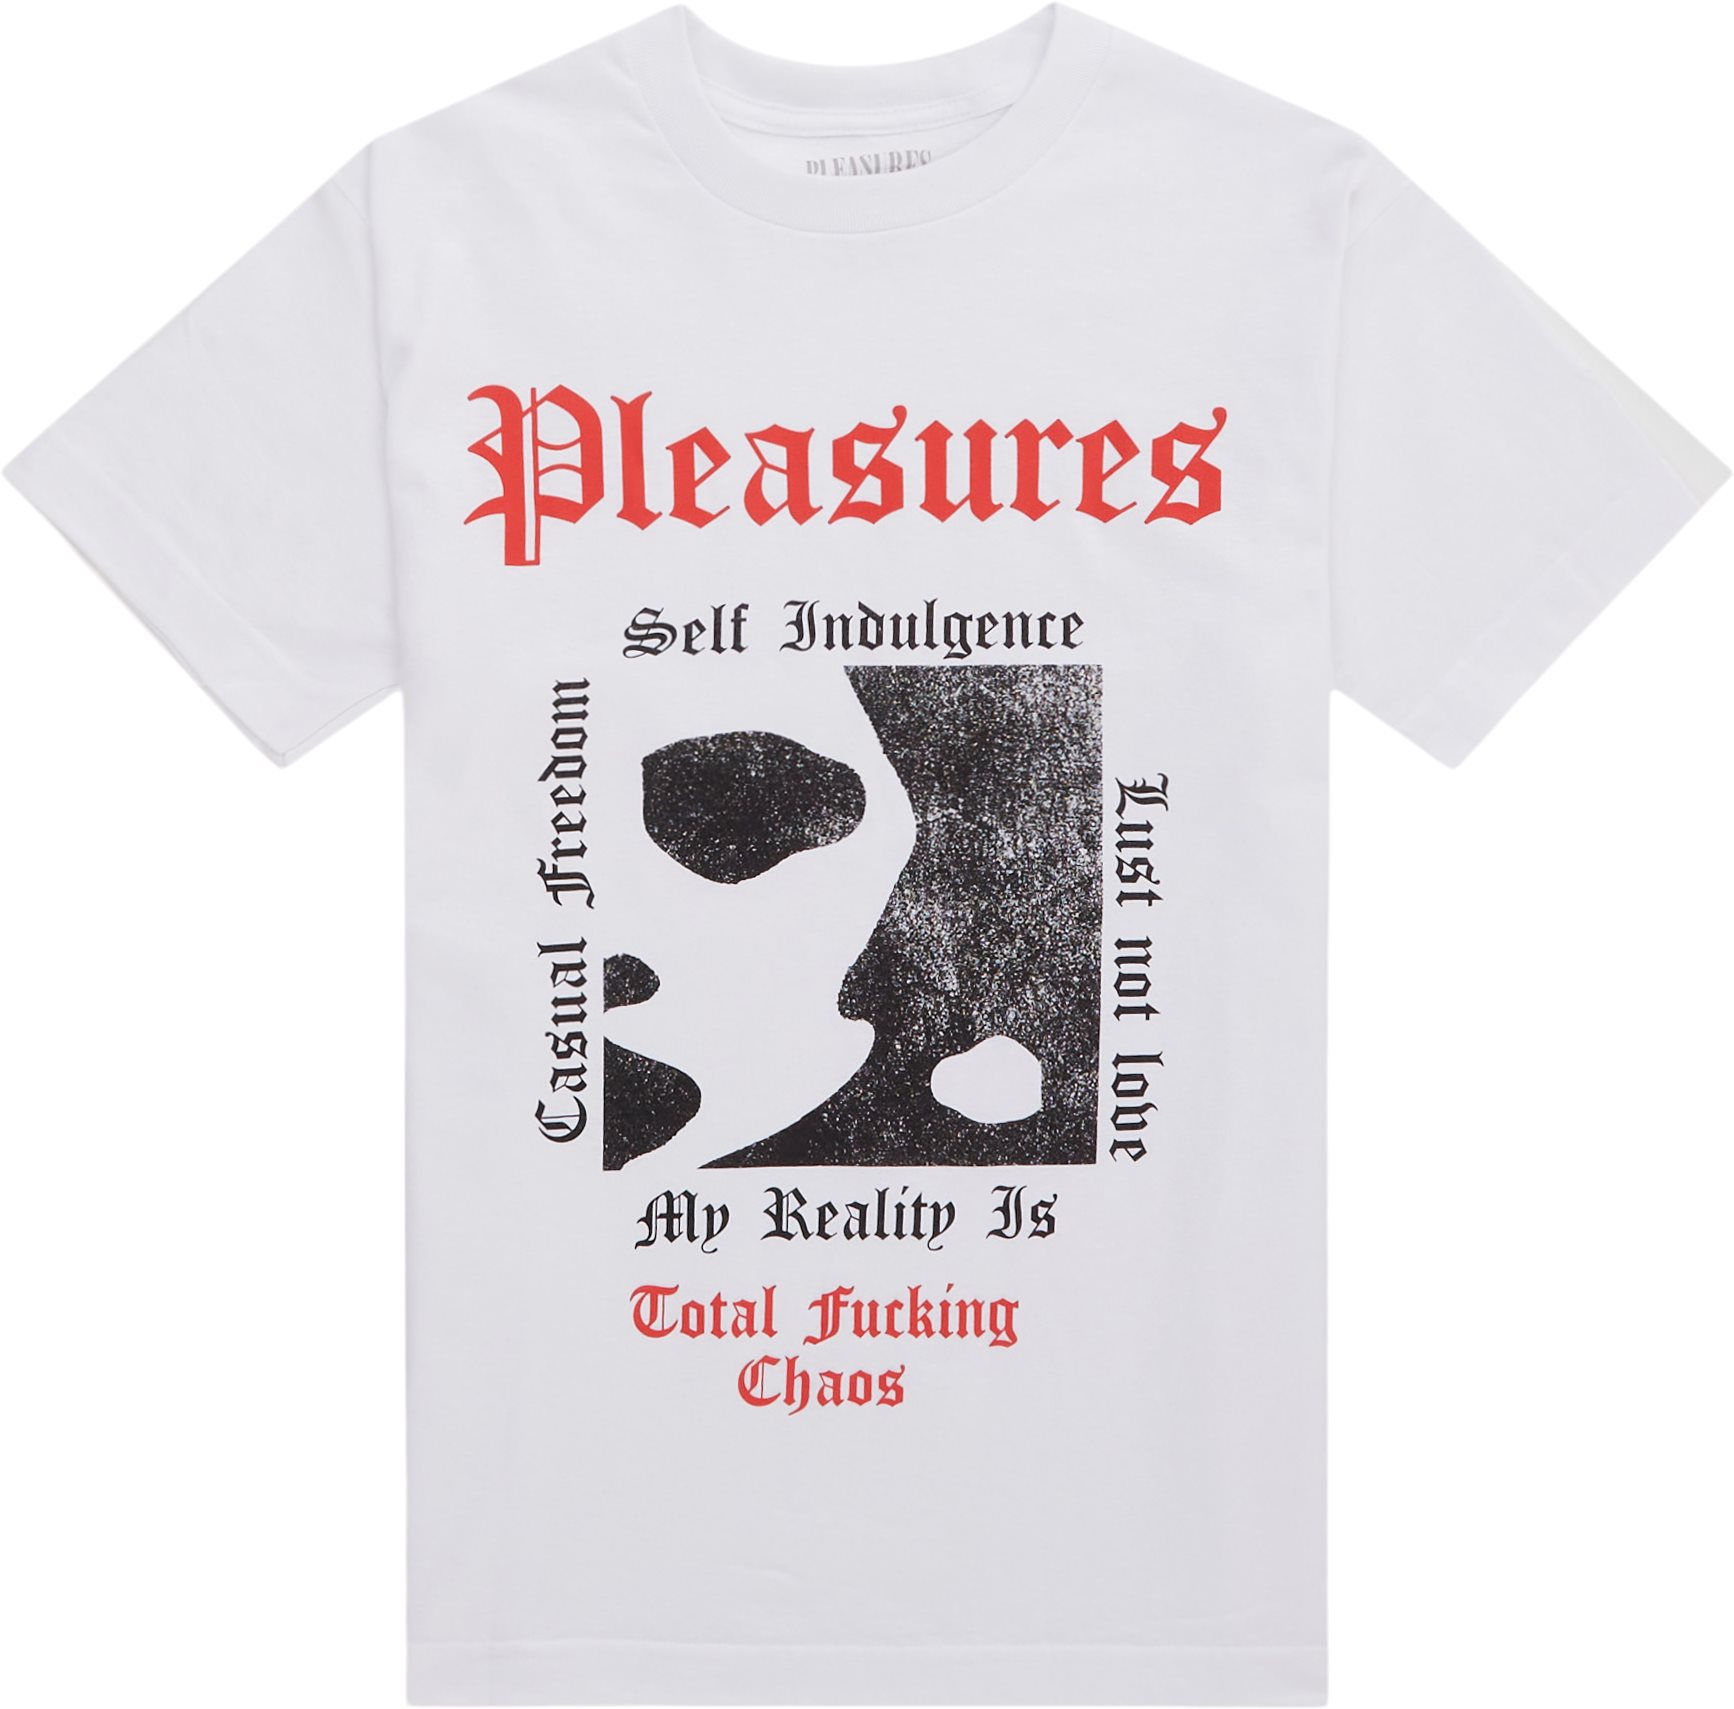 Pleasures T-shirts REALITY TEE White